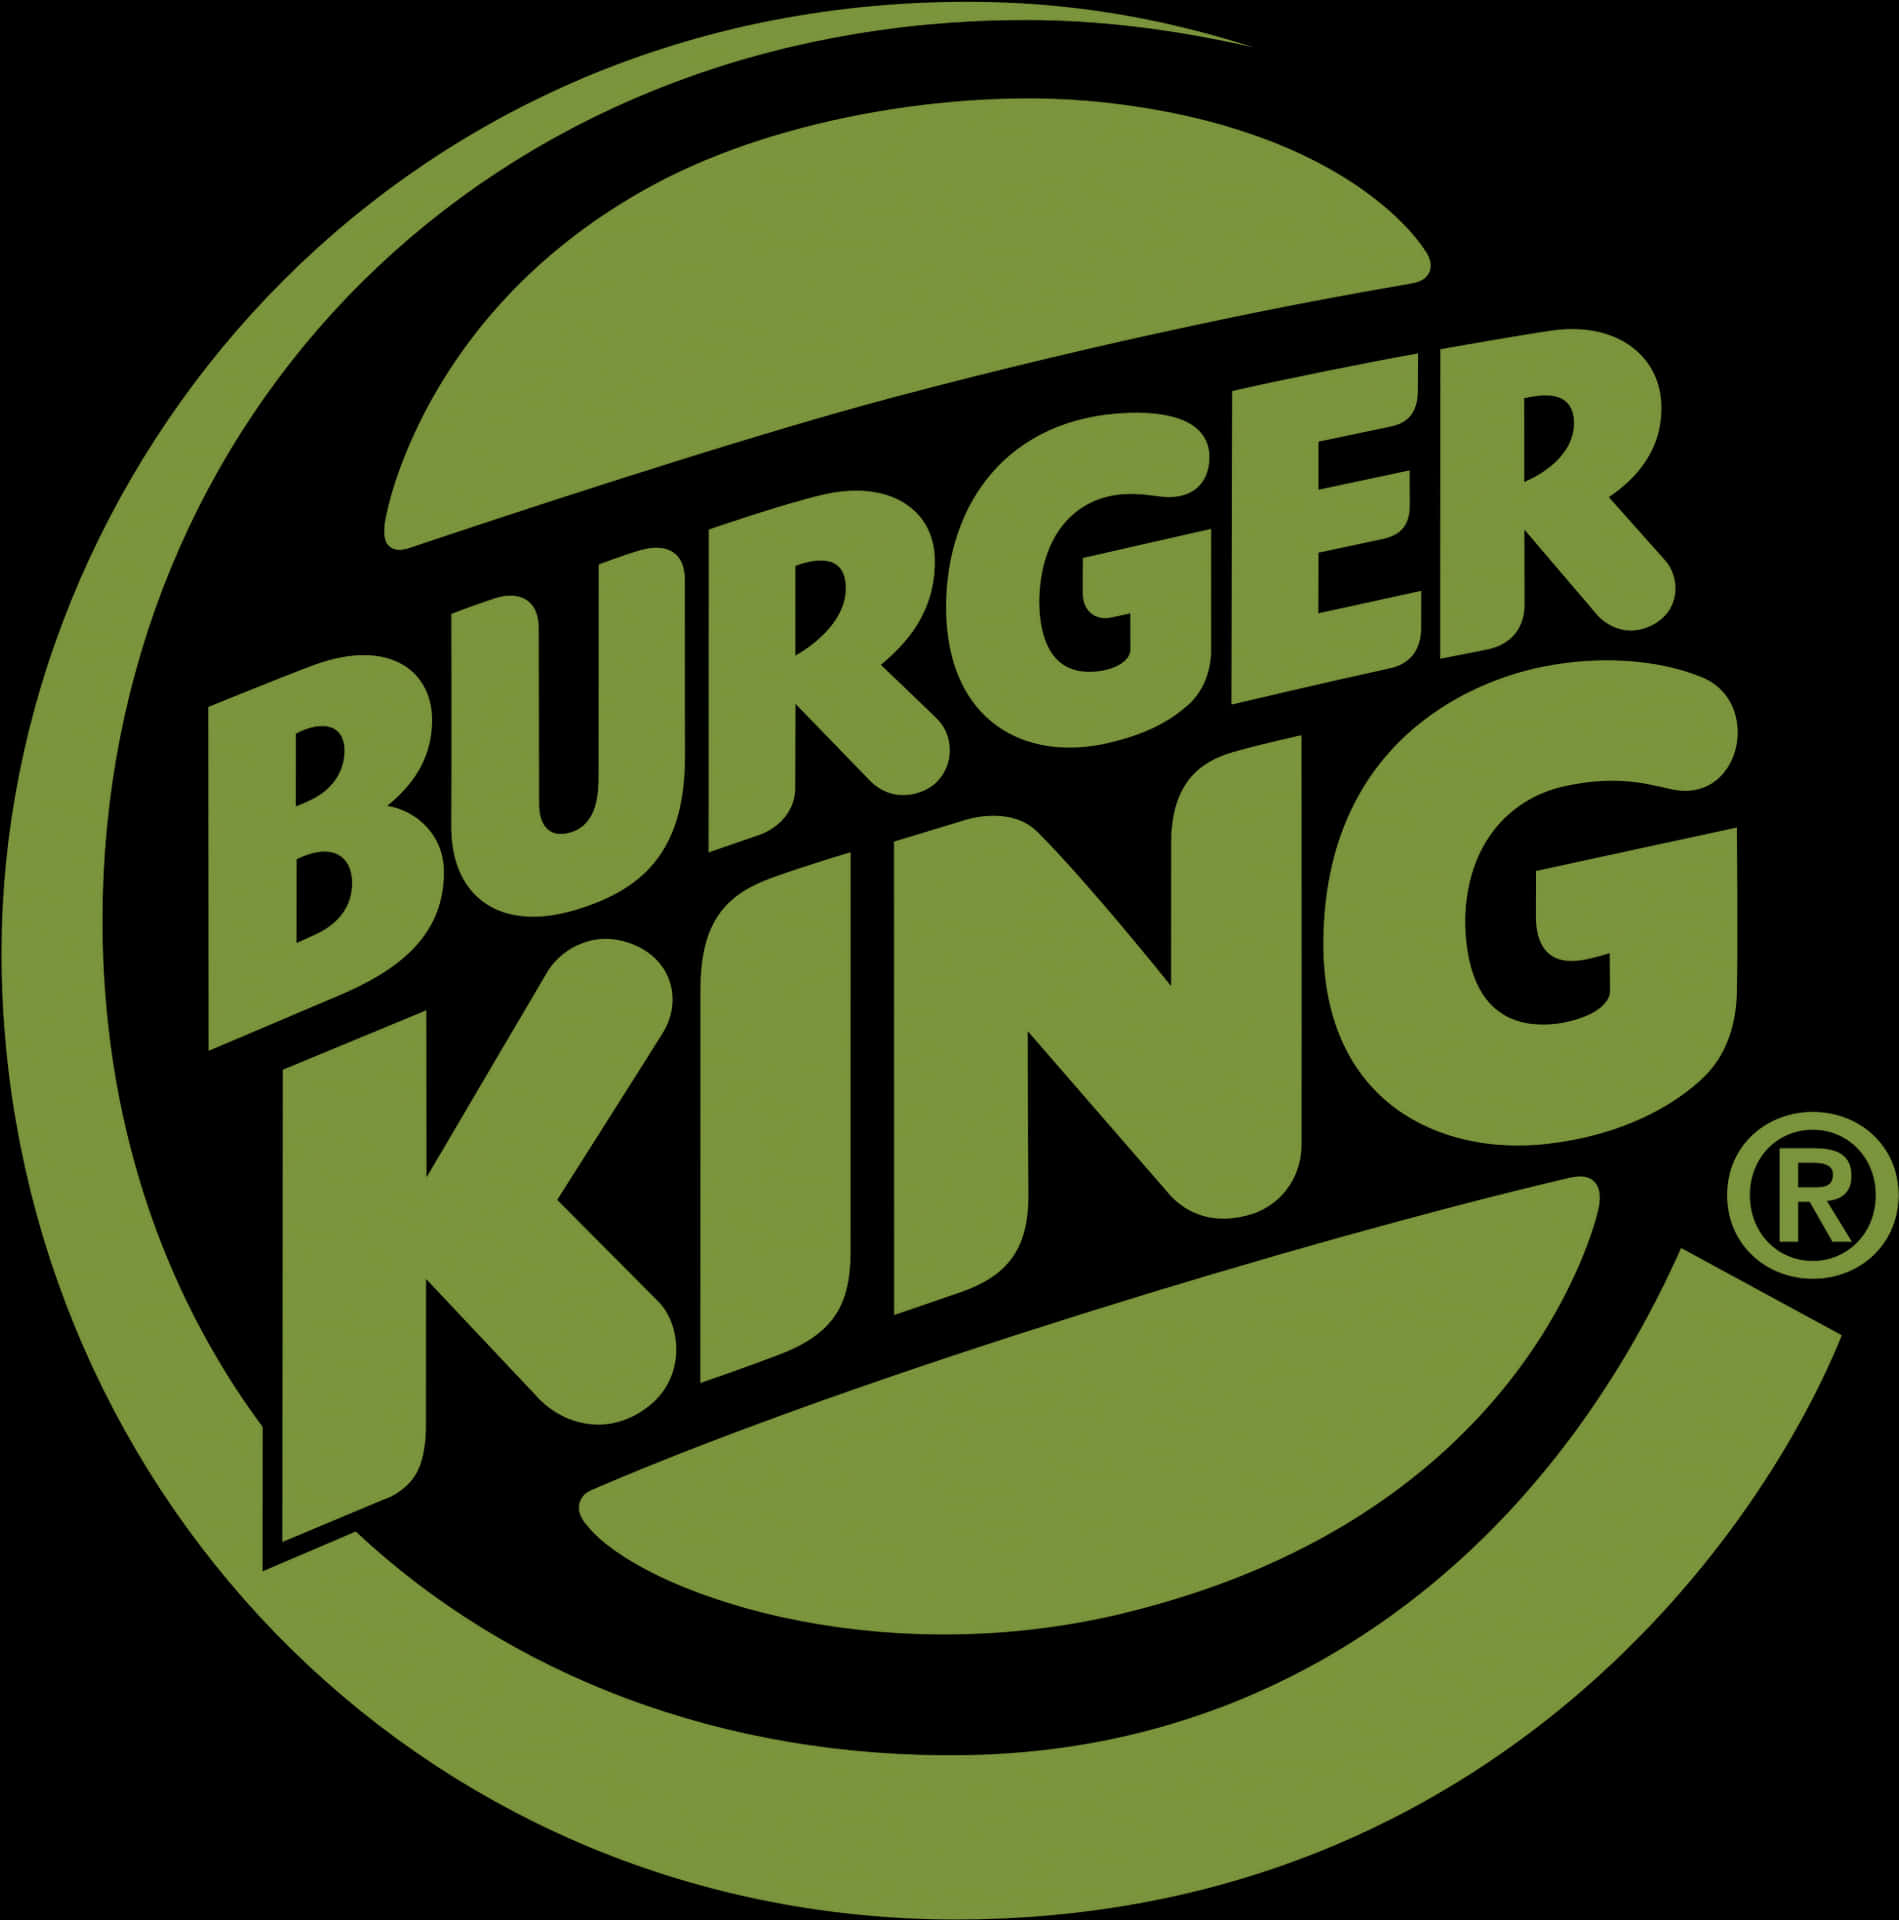 Befriedigedeine Gelüste Mit Der Leckeren Auswahl An Speisen Von Burger King.